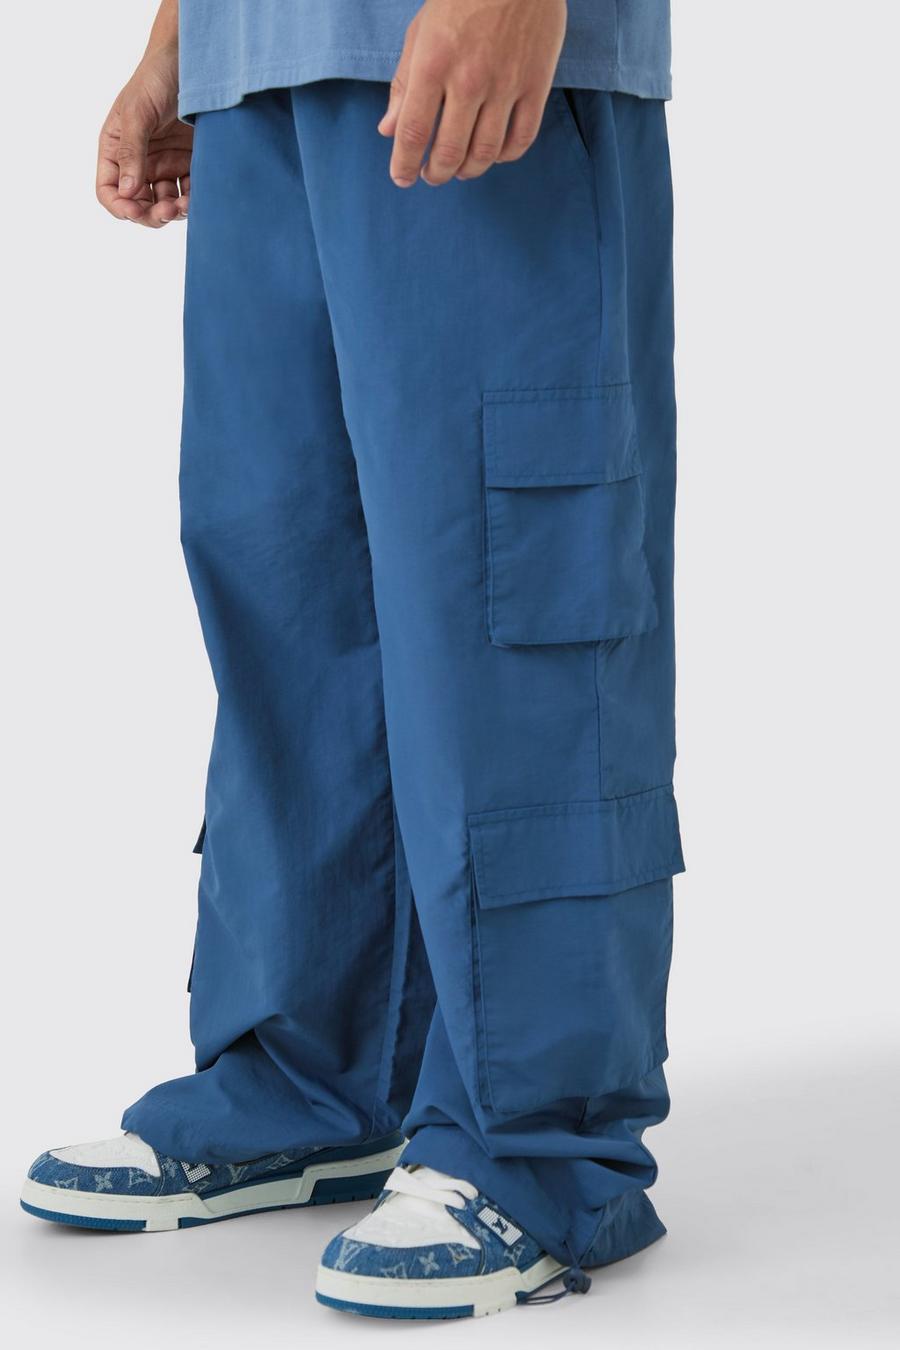 Pantalon parachute à poches multiples, Navy